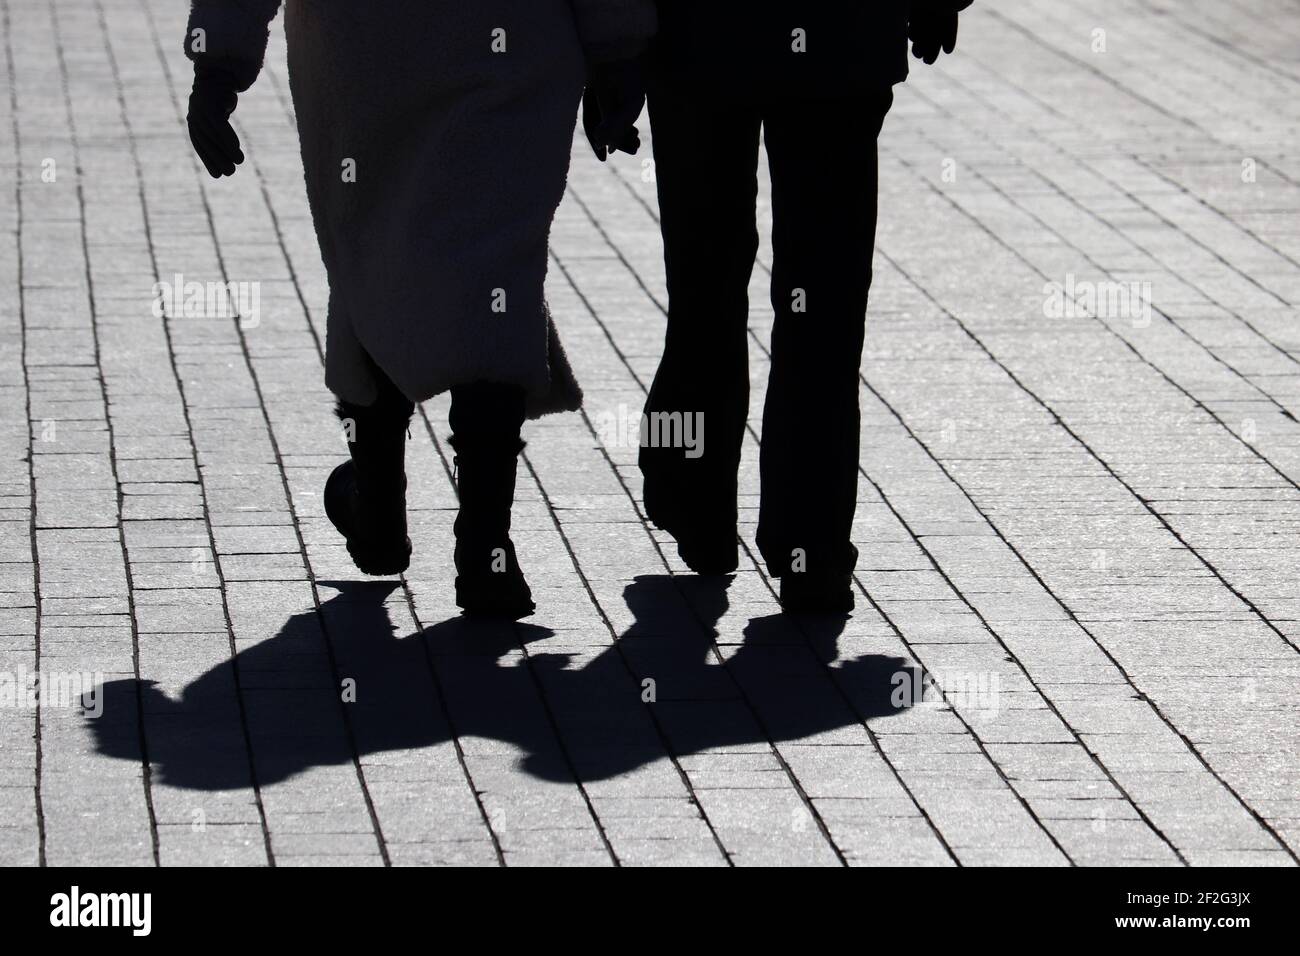 Ein Paar, das die Straße entlang geht, Silhouetten und Schatten von zwei Personen auf dem Fußgängerweg. Männliche und weibliche Beine, Beziehungskonzept Stockfoto